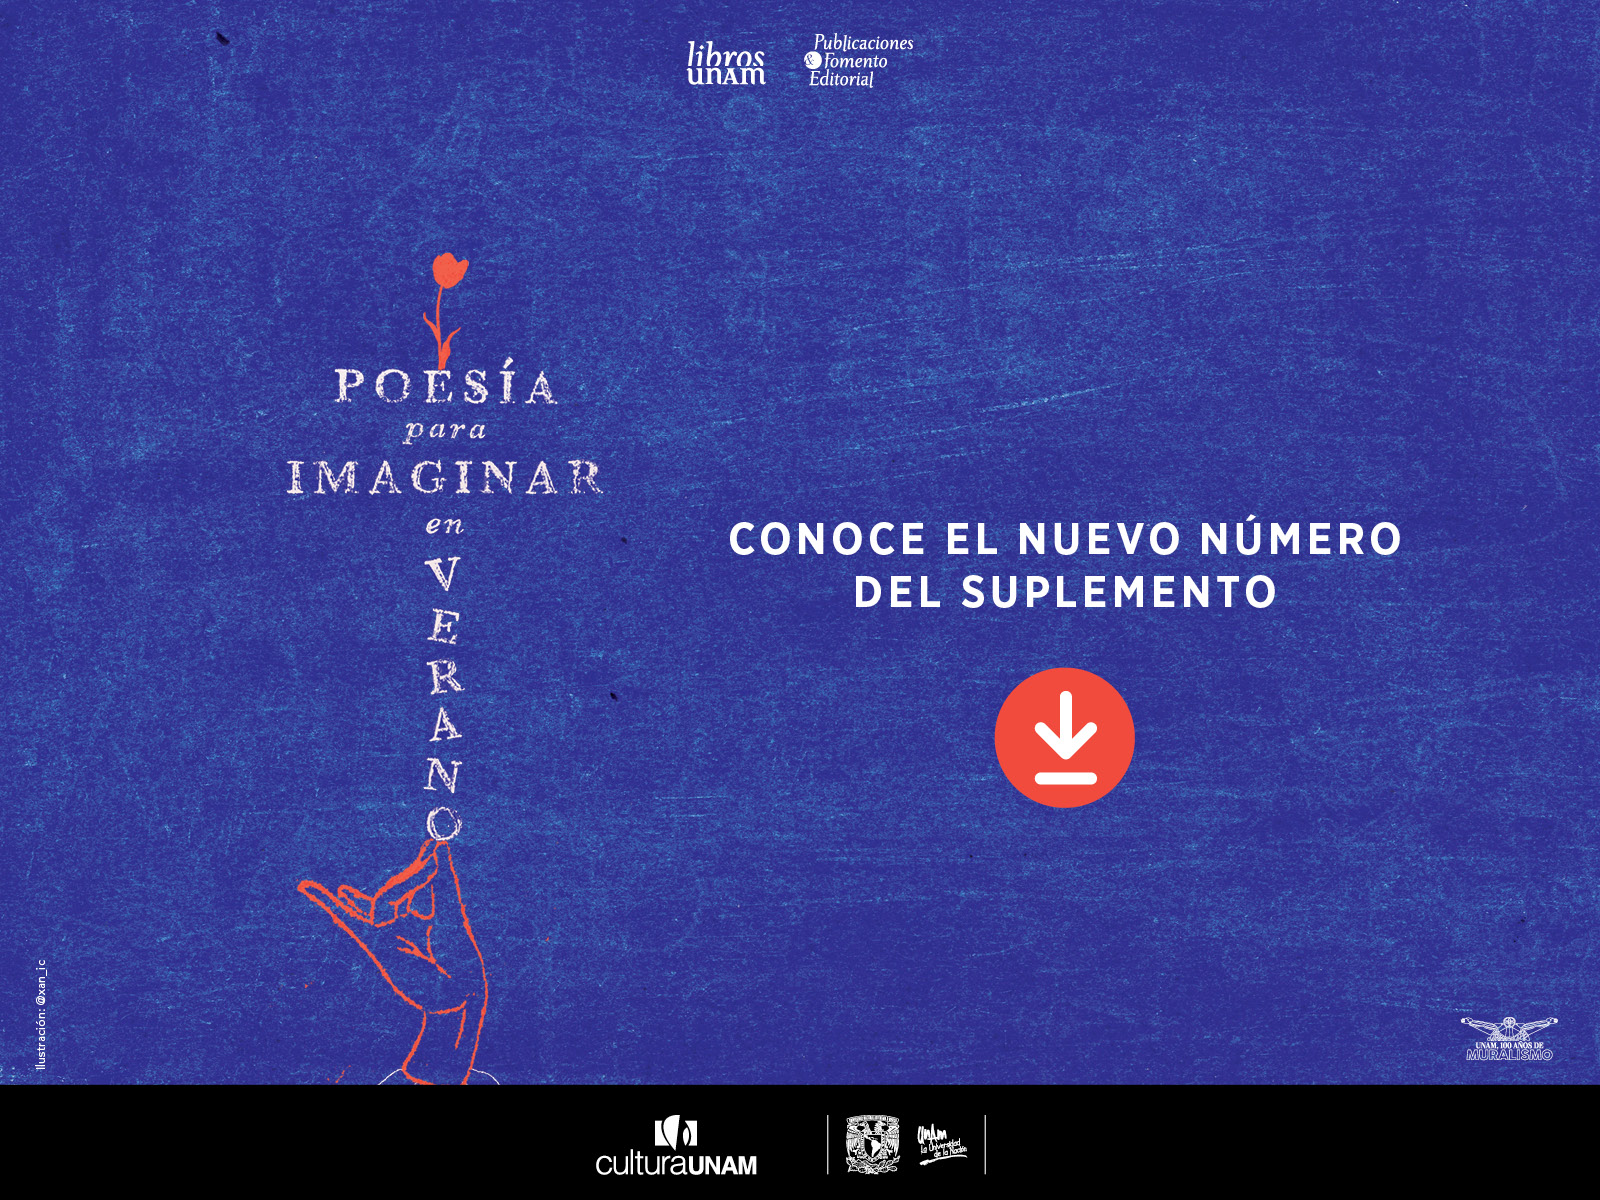 Libros UNAM, suplemento junio, Poesía para imaginar en verano